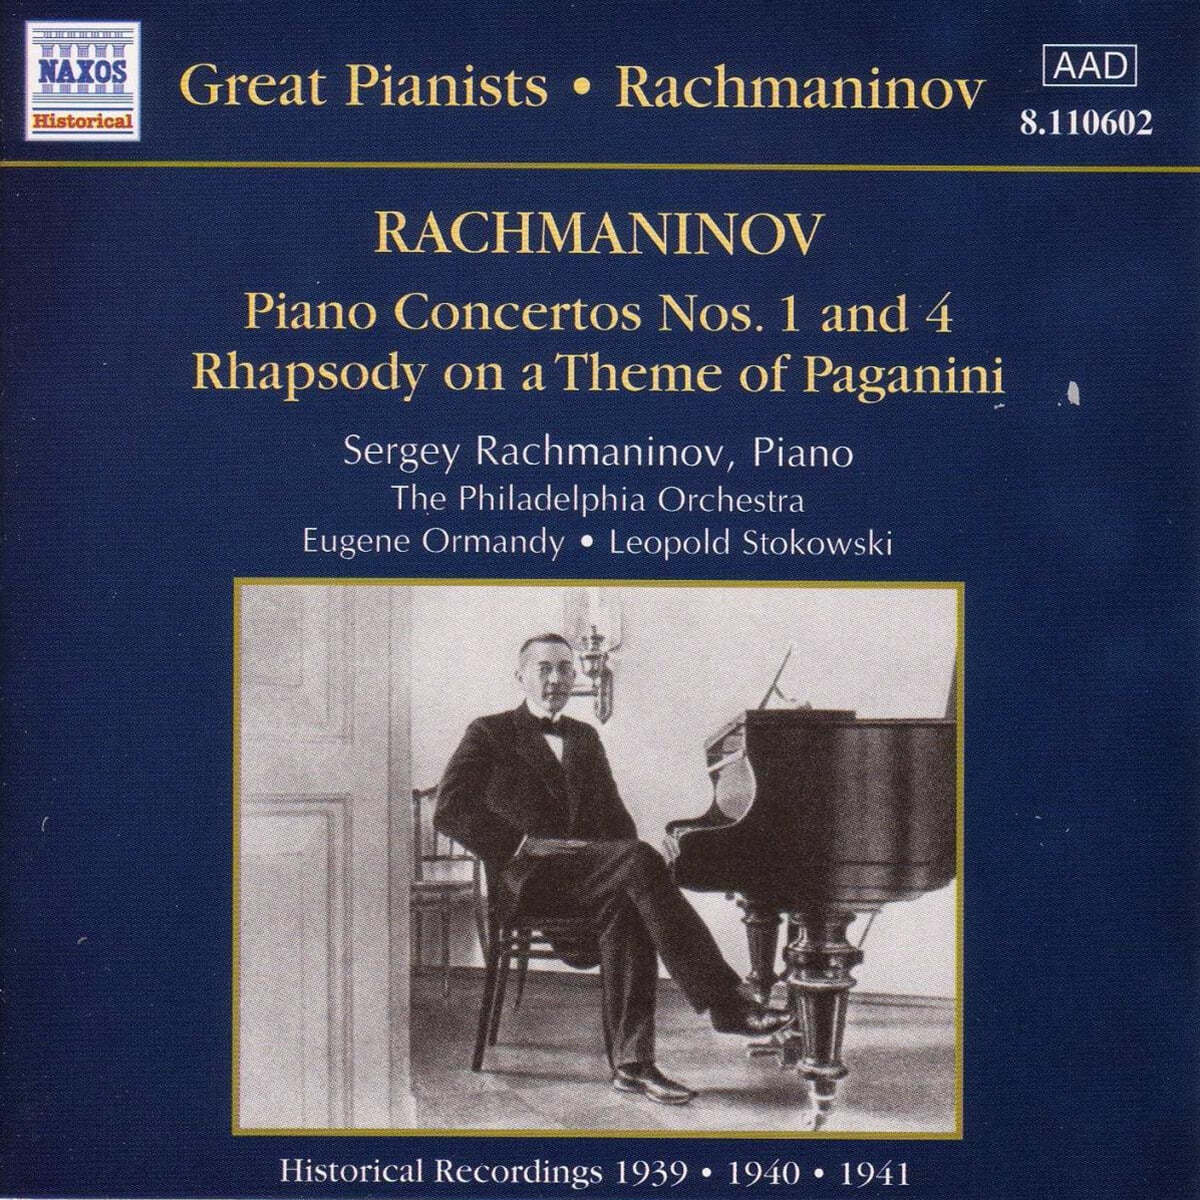 라흐마니노프가 직접 연주하는 피아노 협주곡 1, 4번 (Sergey Rachmaninov Plays Rachmaninov Piano Concertos Op.1, Op.40) 